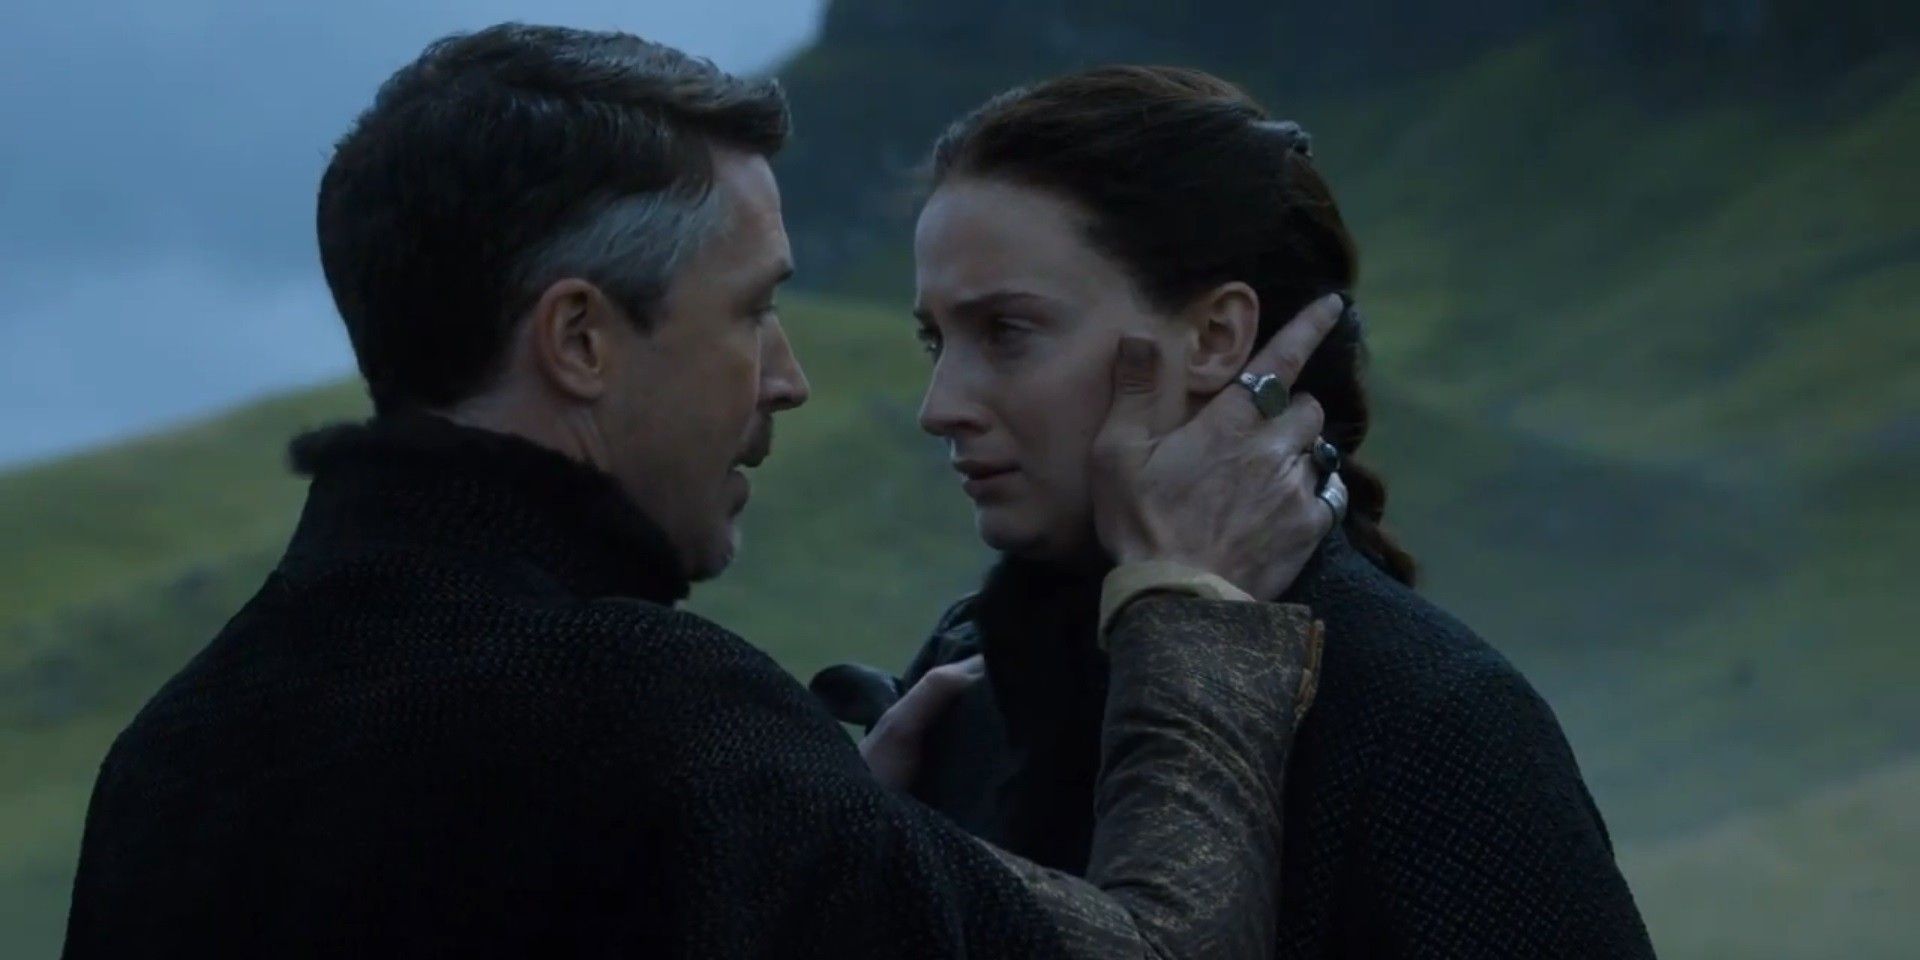 Littlefinger touching Sansa's face in Game of Thrones